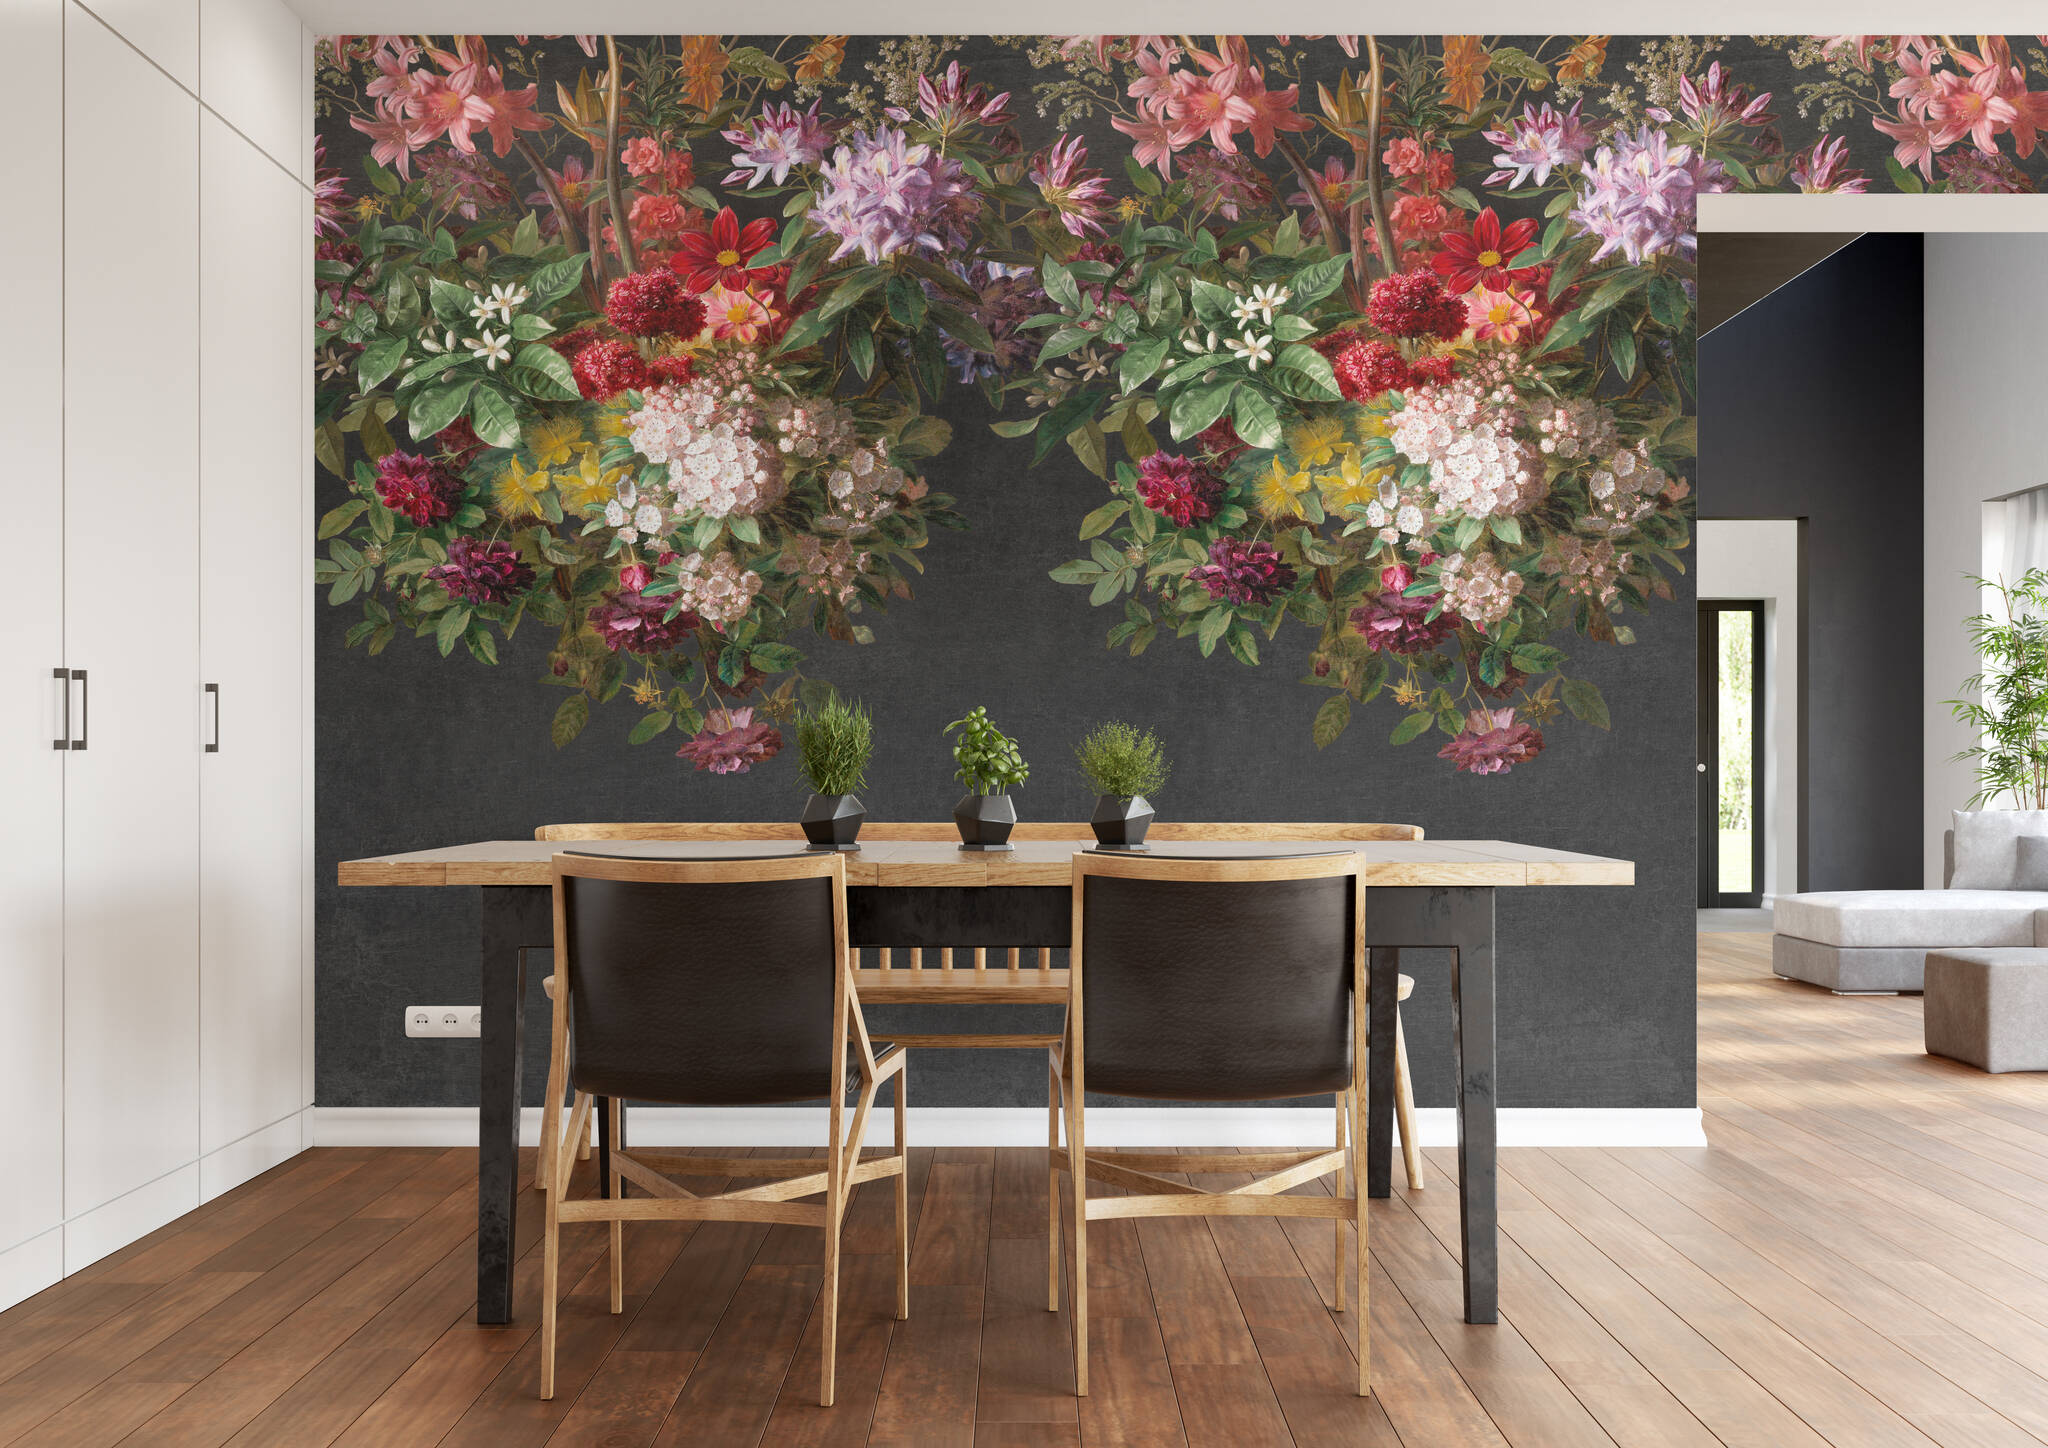 Esszimmer mit Wandbild - Blütenpracht in kräftigen Farben auf schwarzem Hintergrund